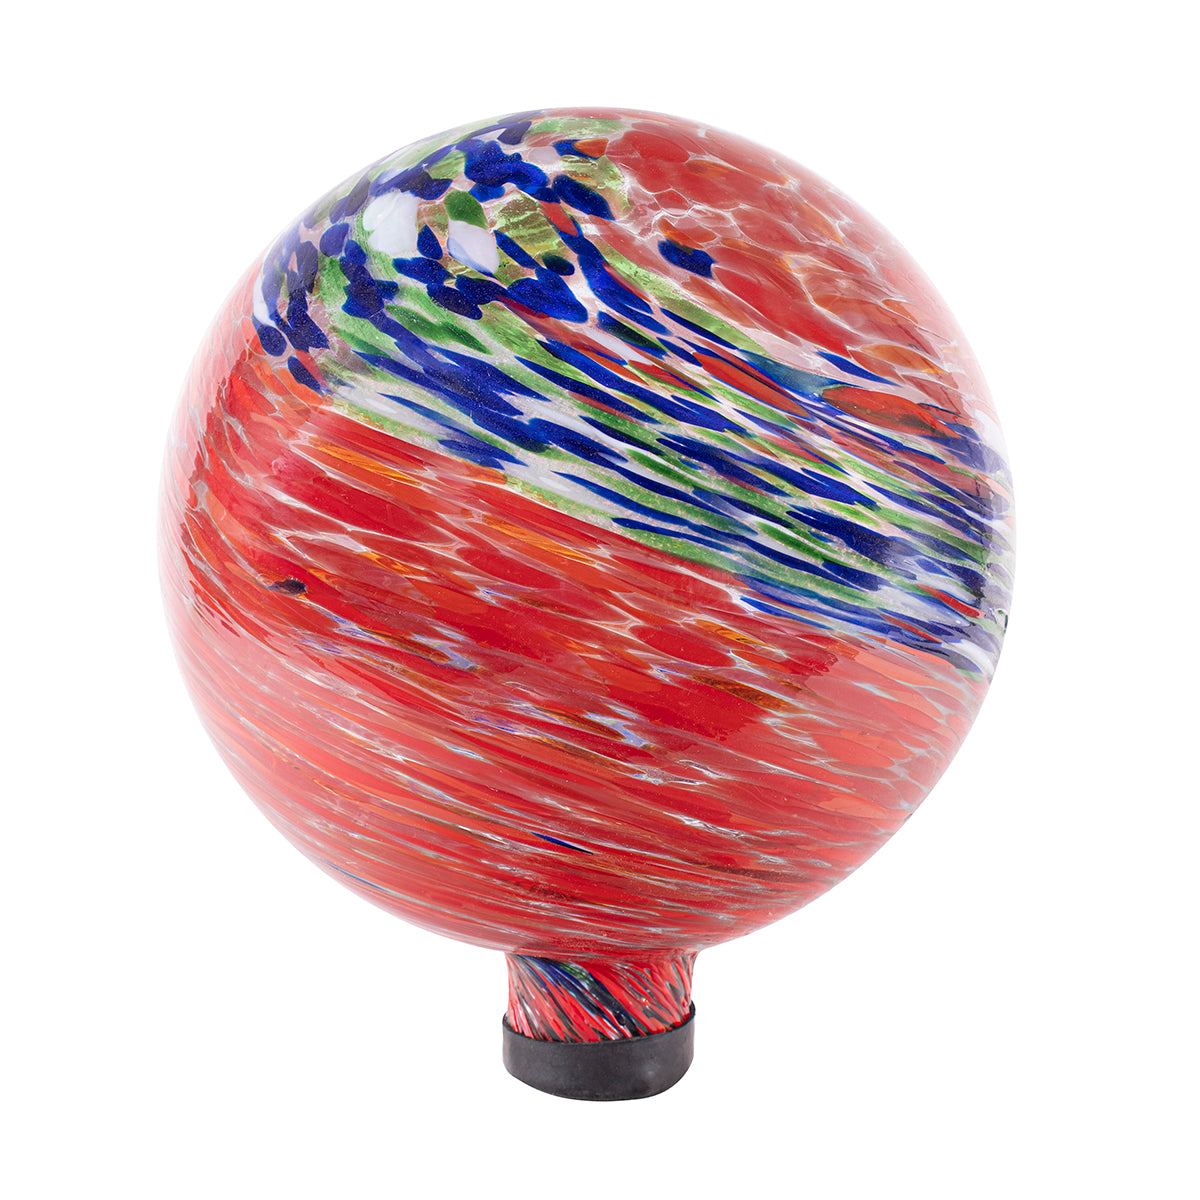 10" Red Swirl Illuminarie Gazing Globe